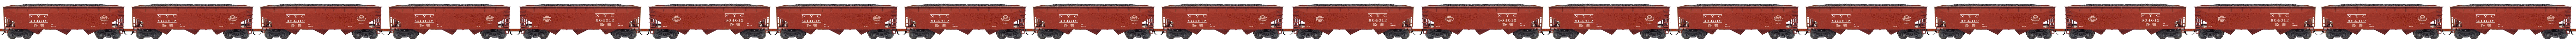 Convoi 20  wagons NYC rouges chargés de charbon